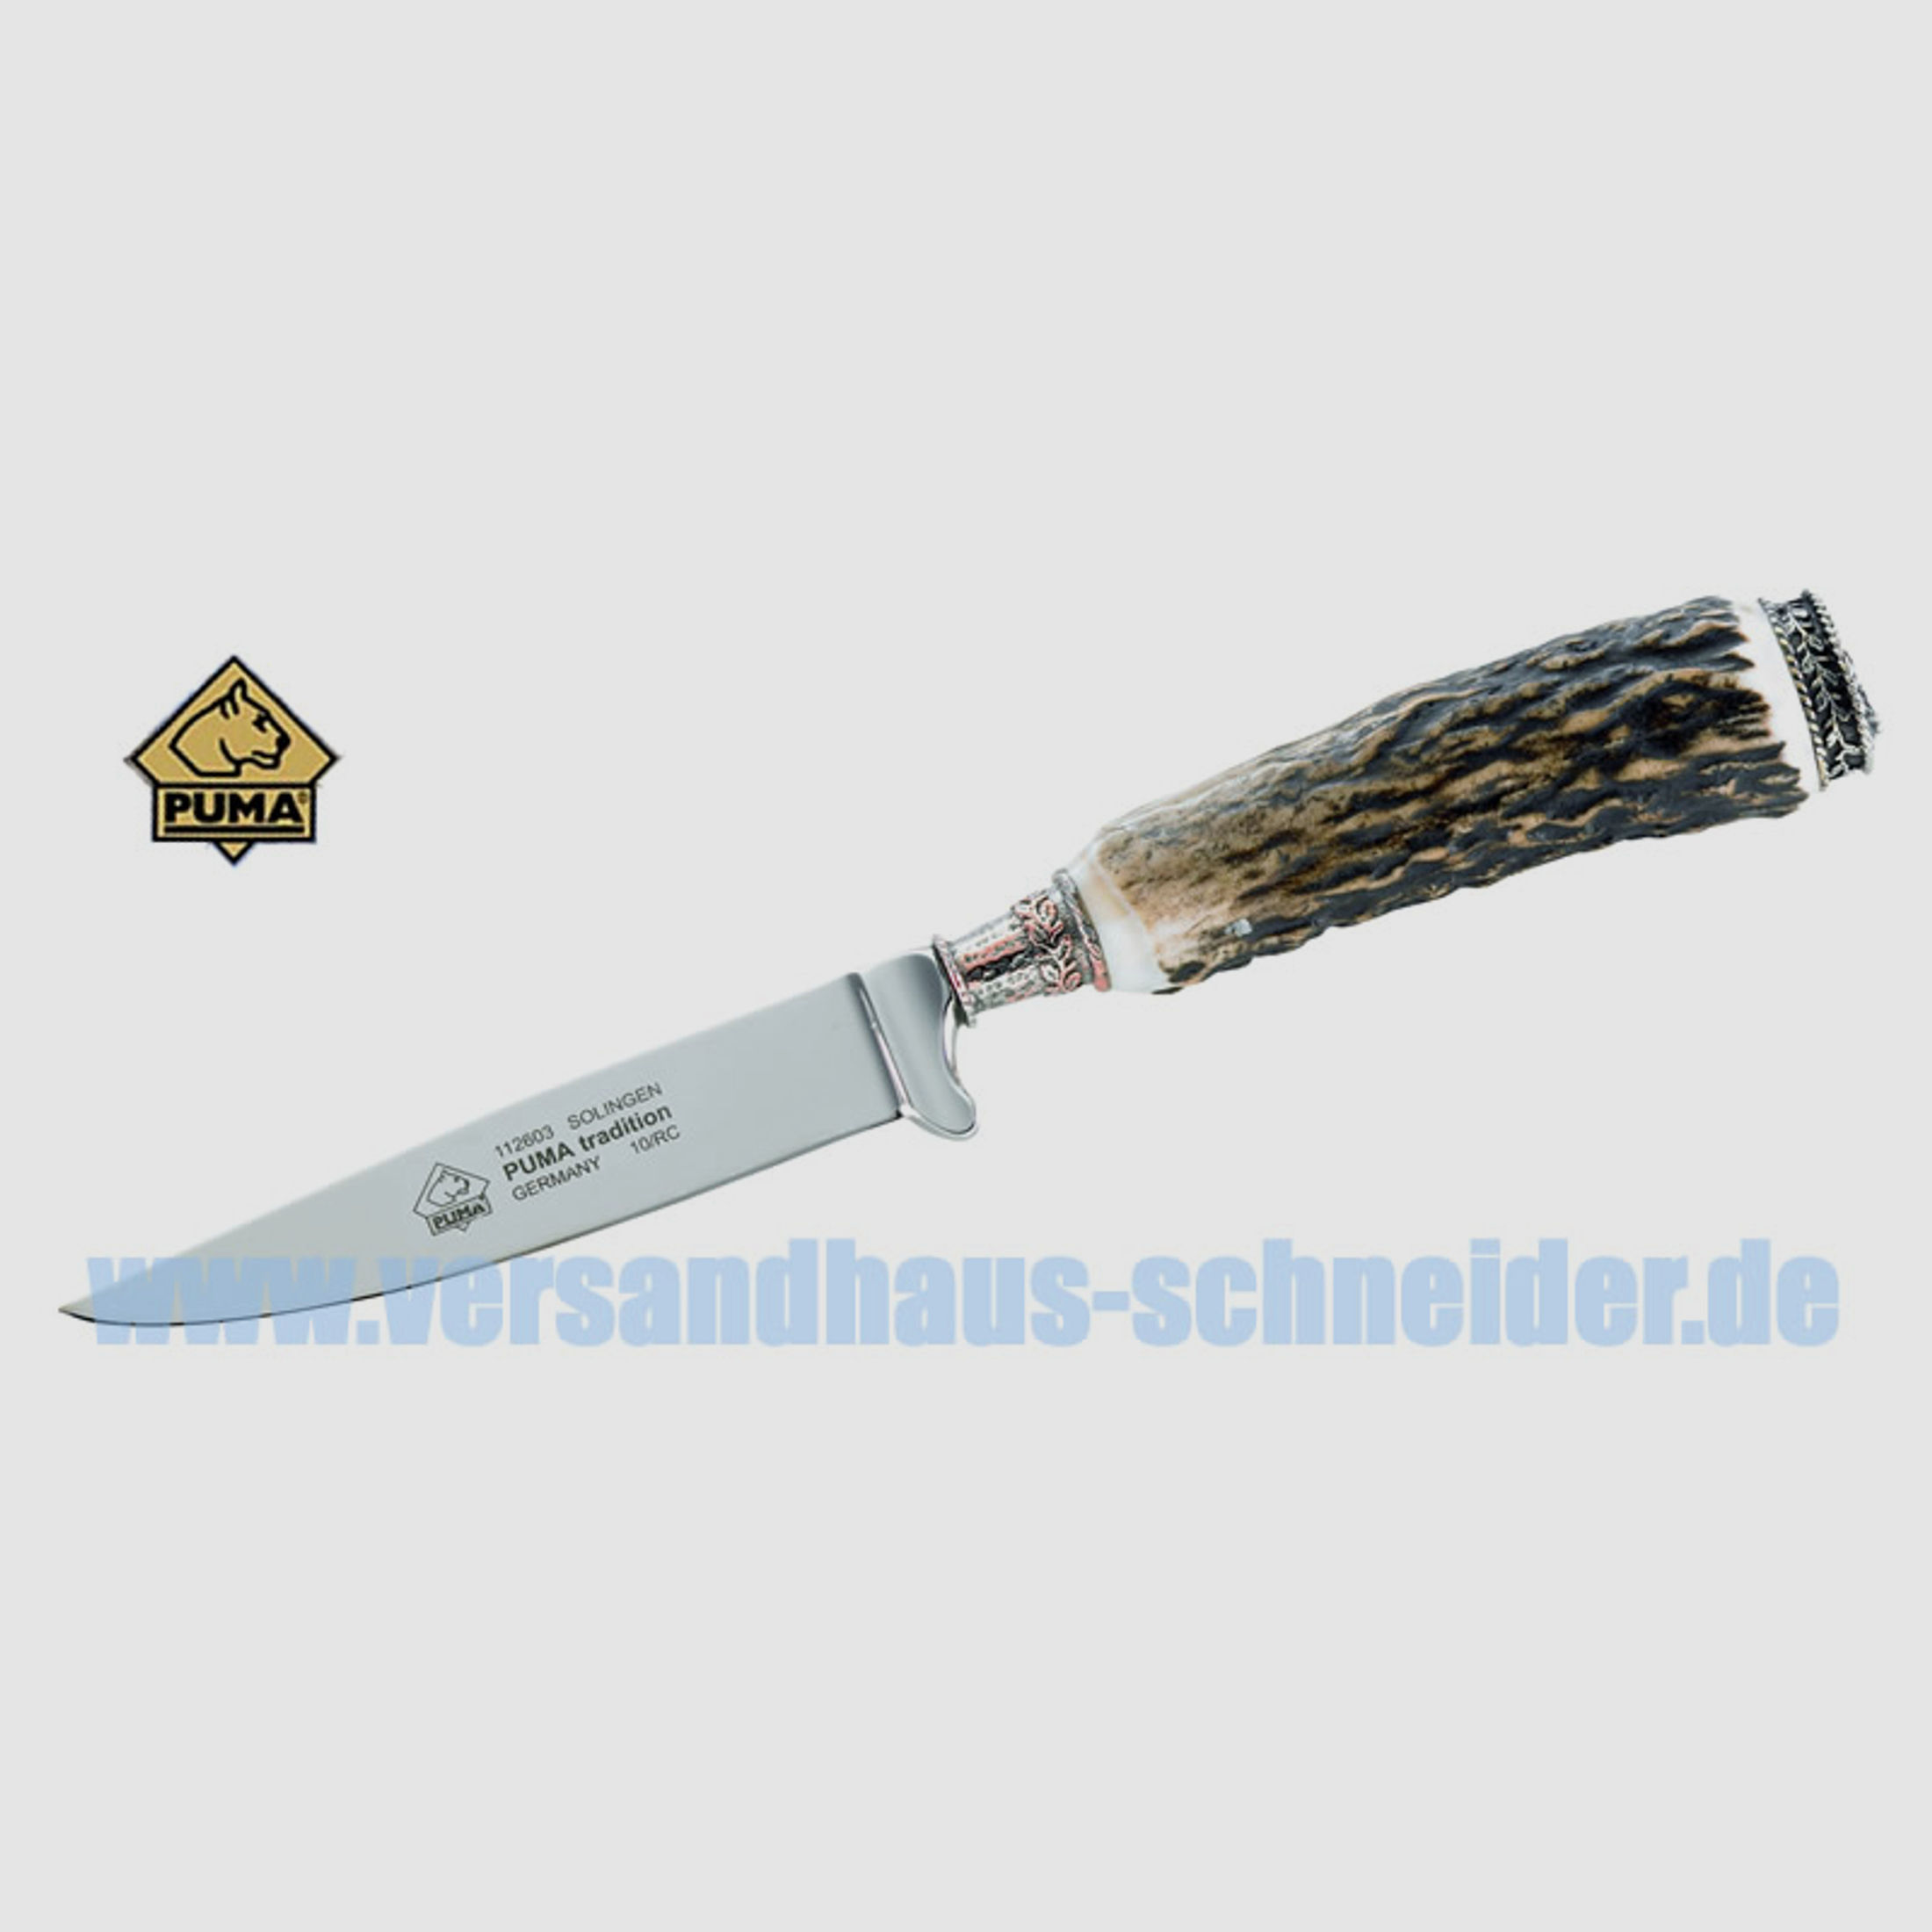 Puma Jagdmesser, Modell Tradition, Stahl 1.4116, Hirschhorn, Leder-Steckscheide